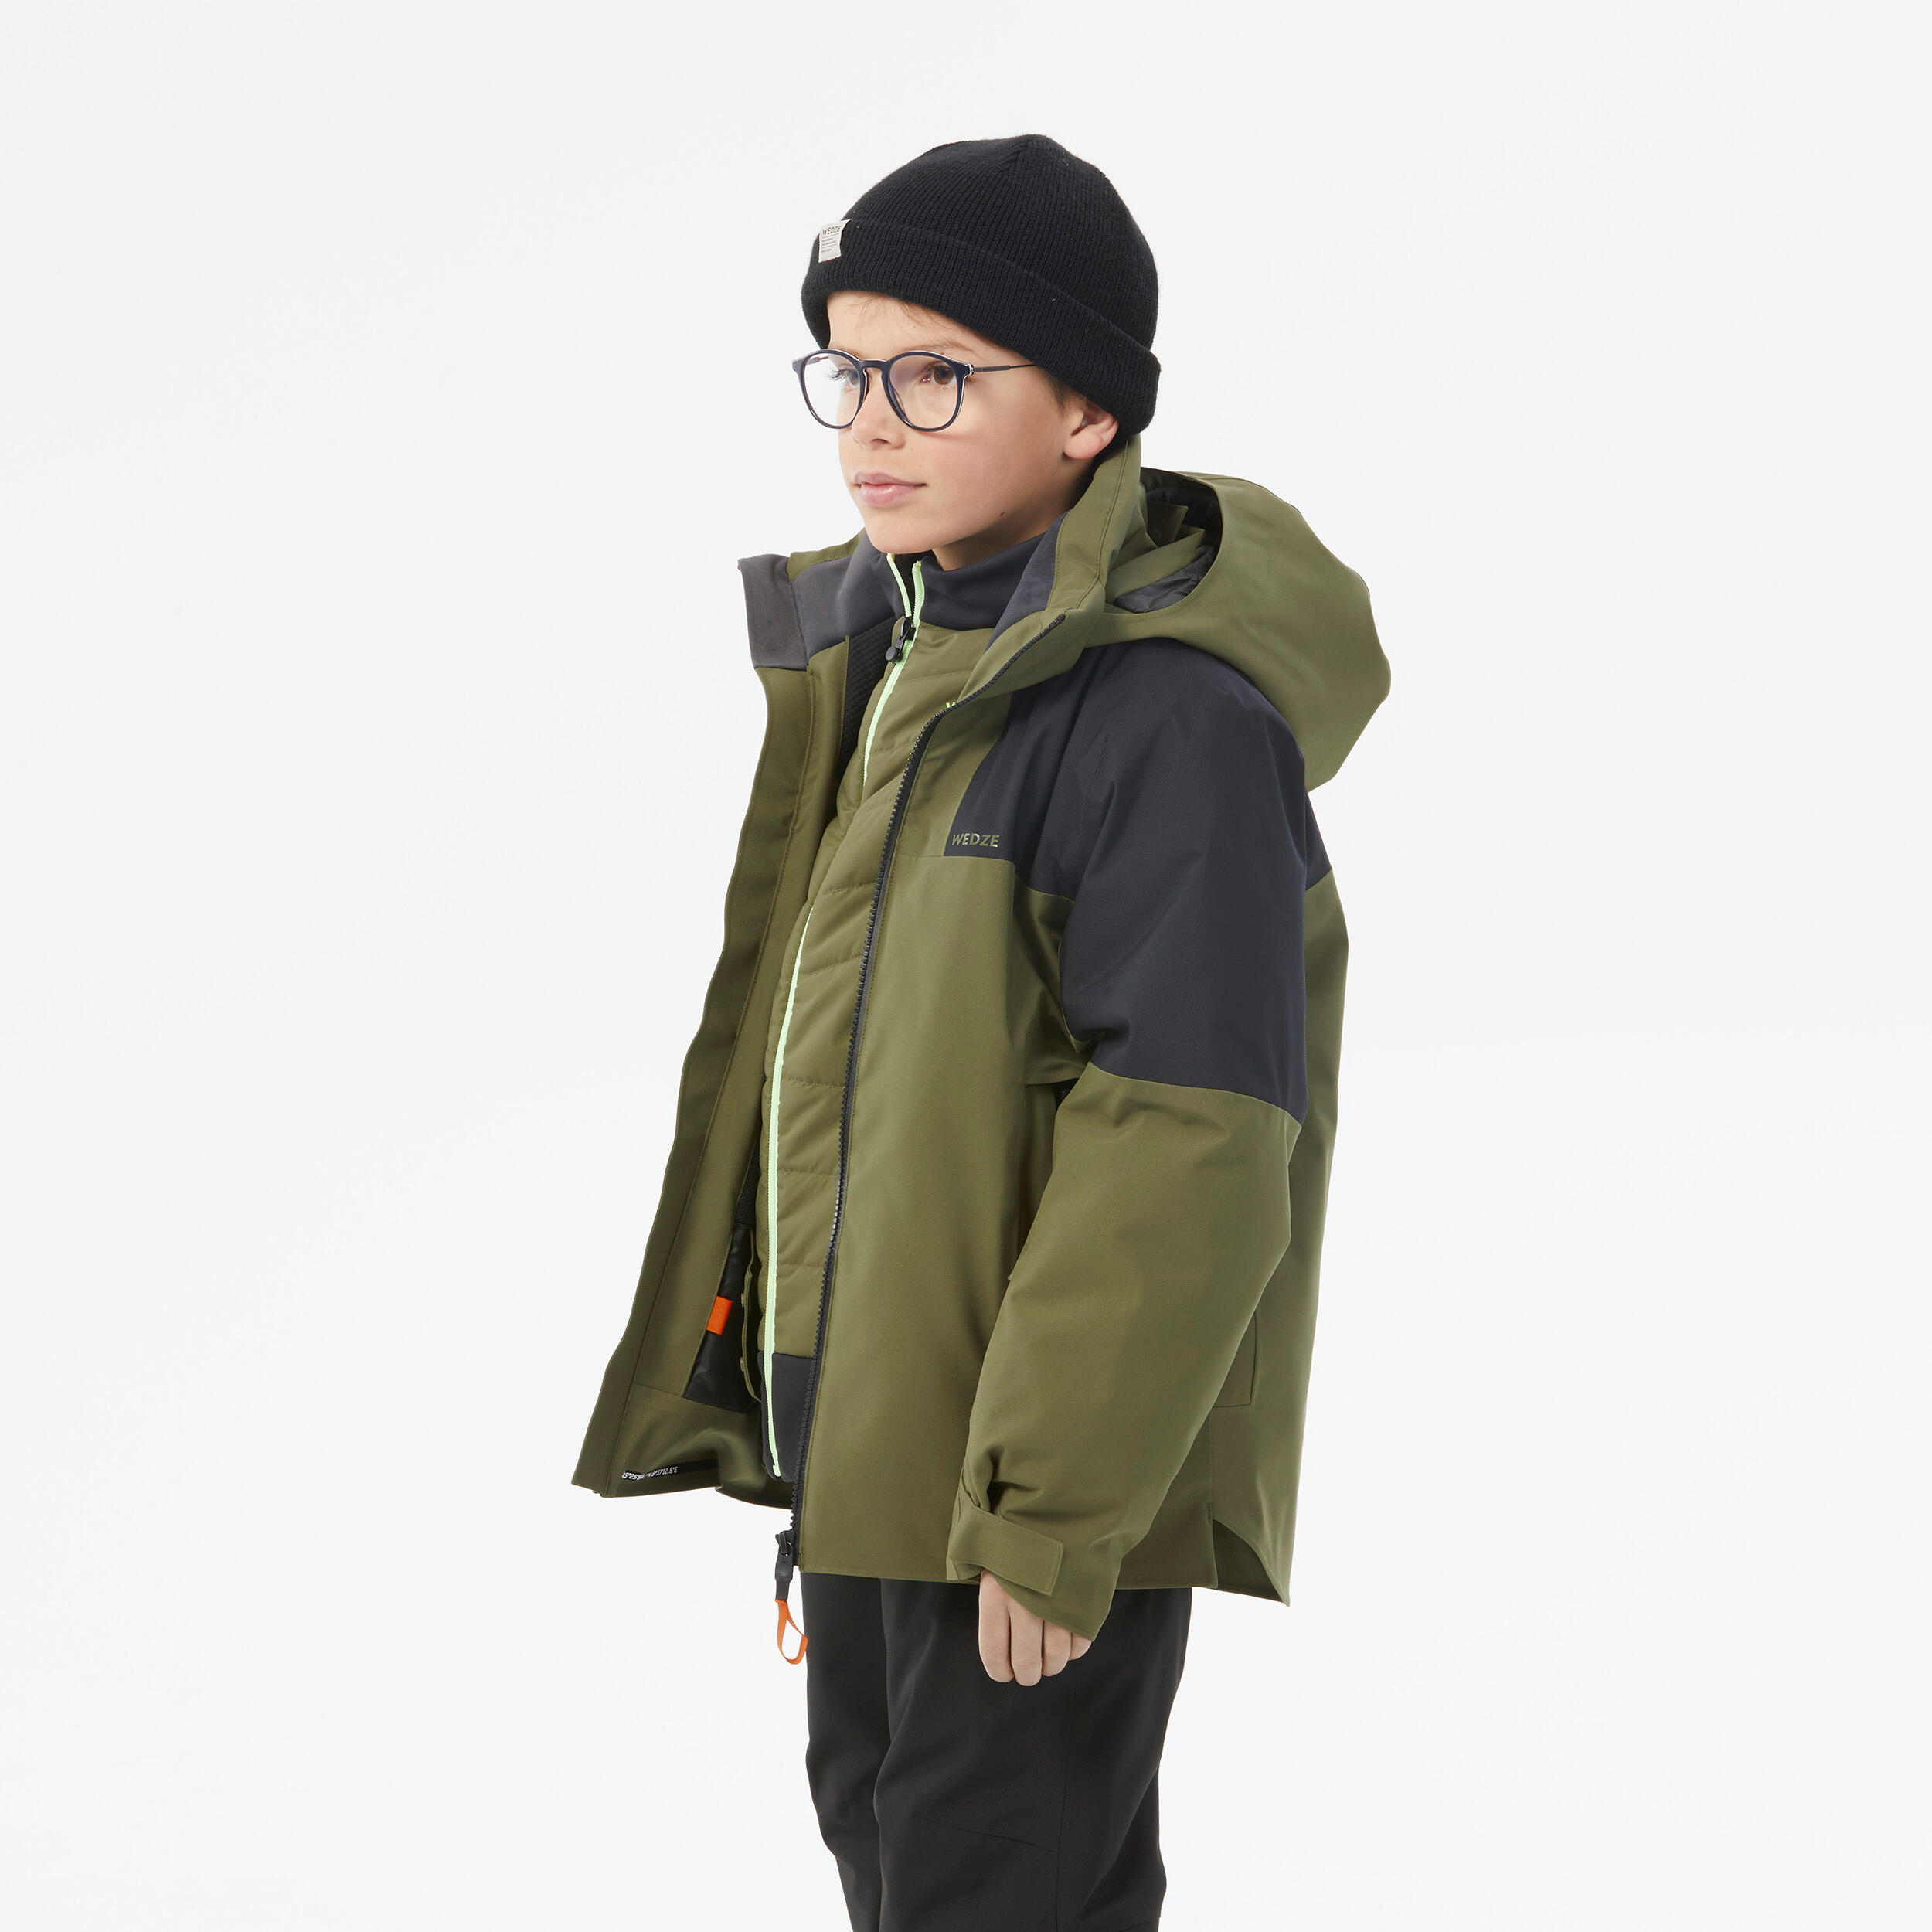 Kids’ warm and waterproof ski jacket 900 - Khaki 4/13